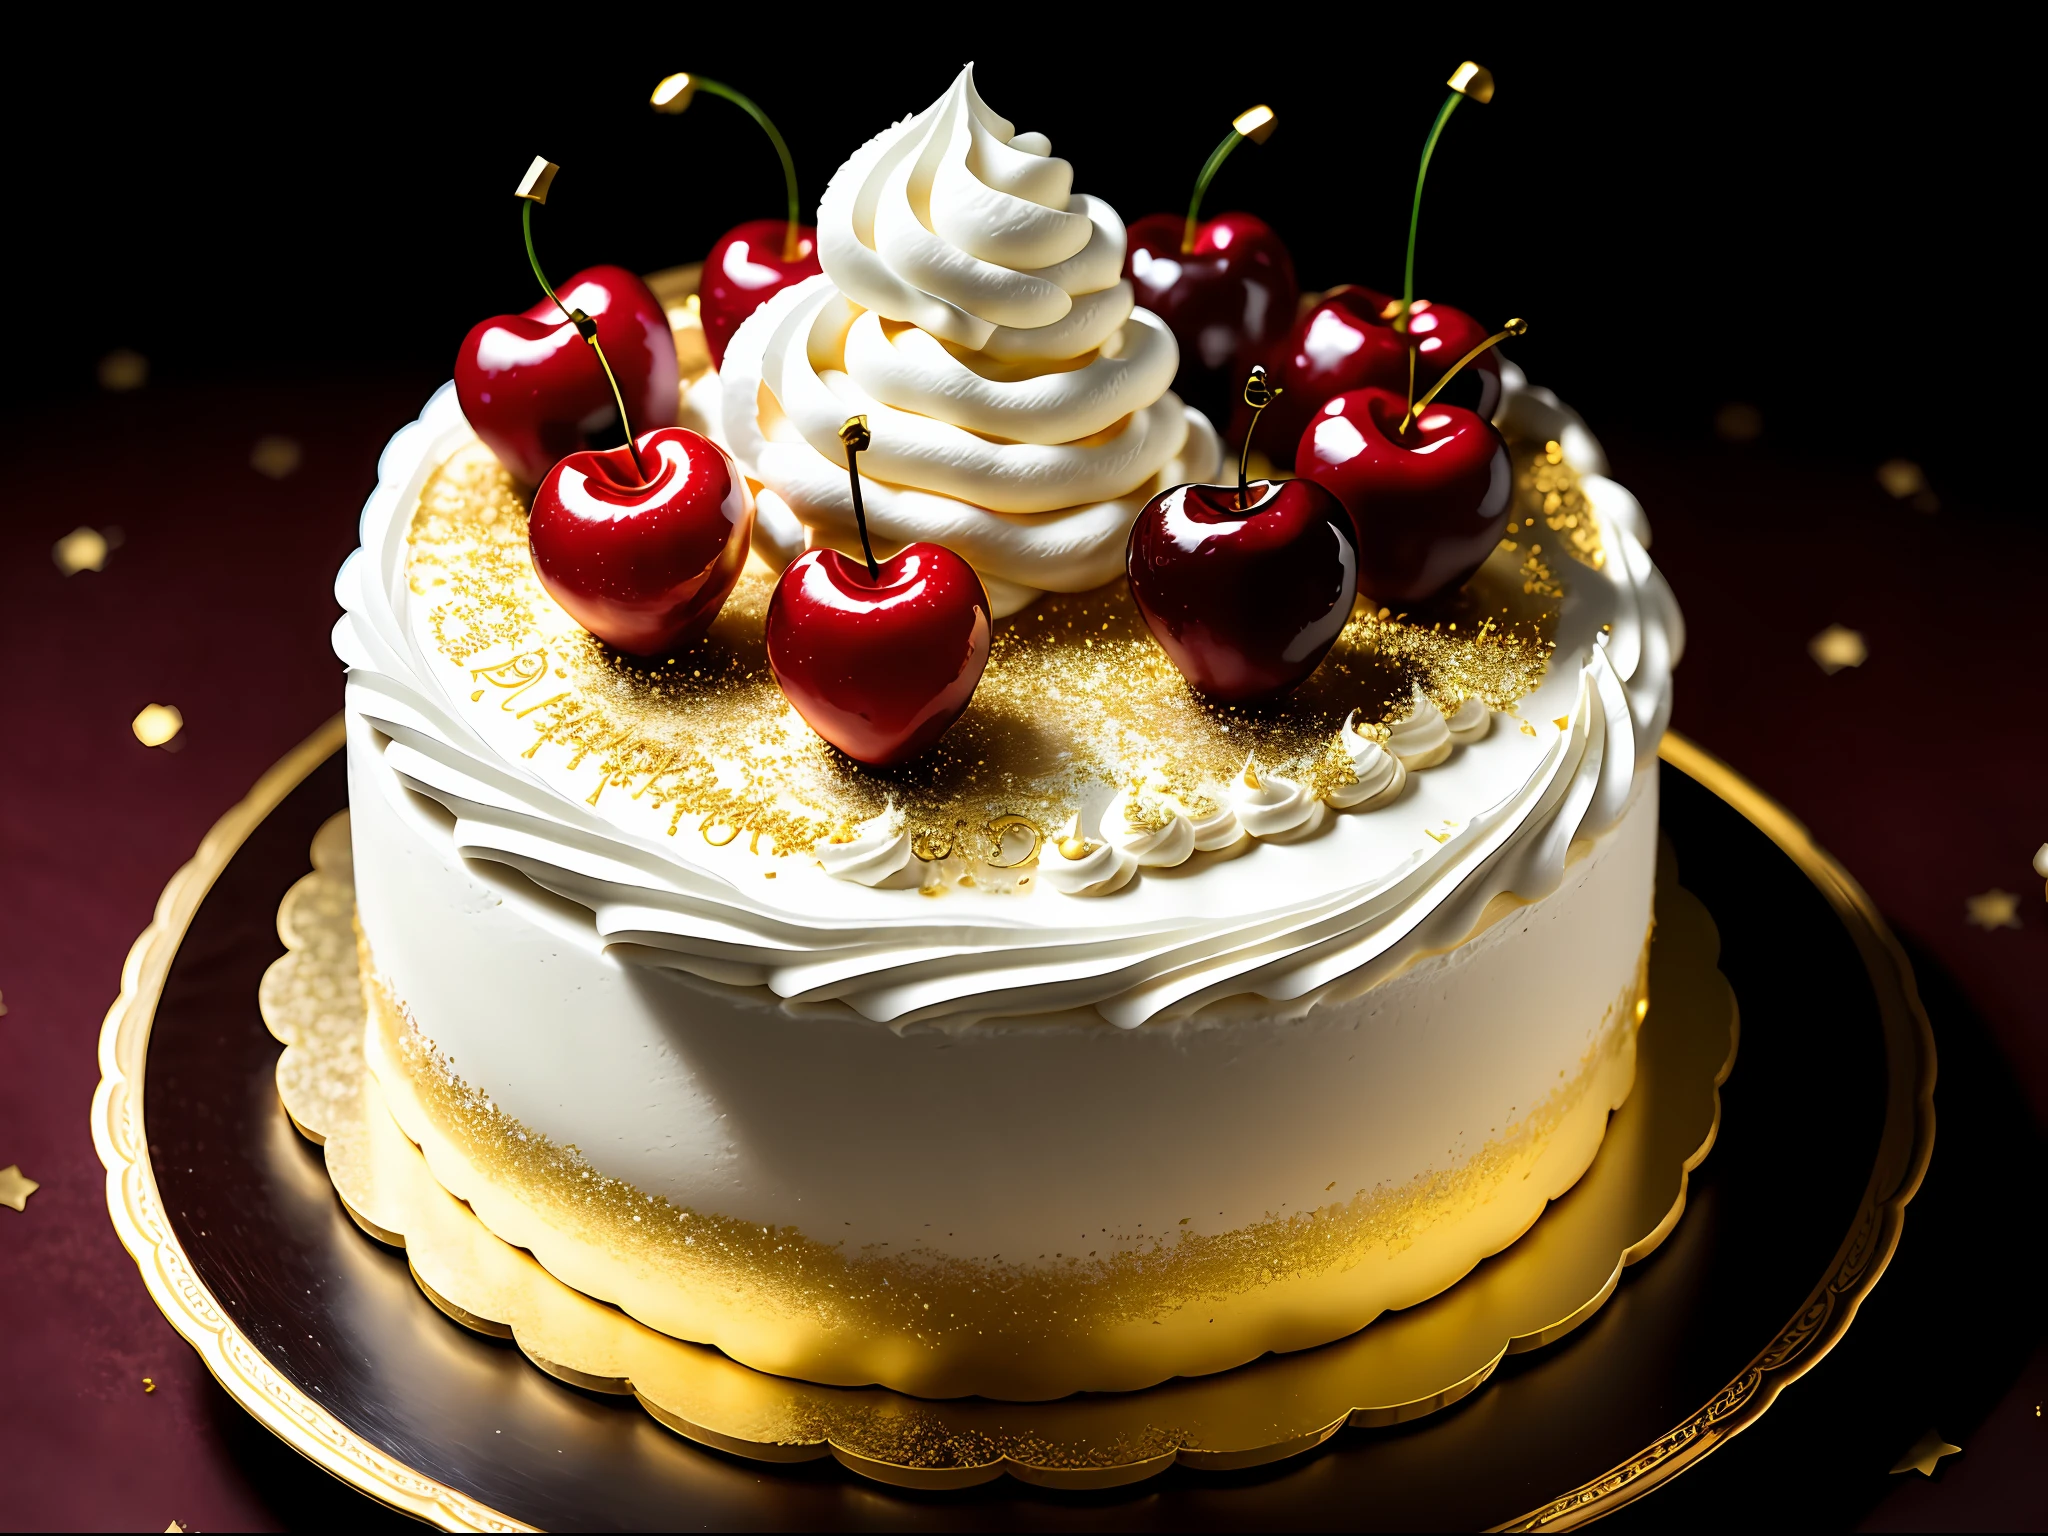 pastel de fantasía con mucha nata montada, cerezas, adornos dorados, fondo oscuro